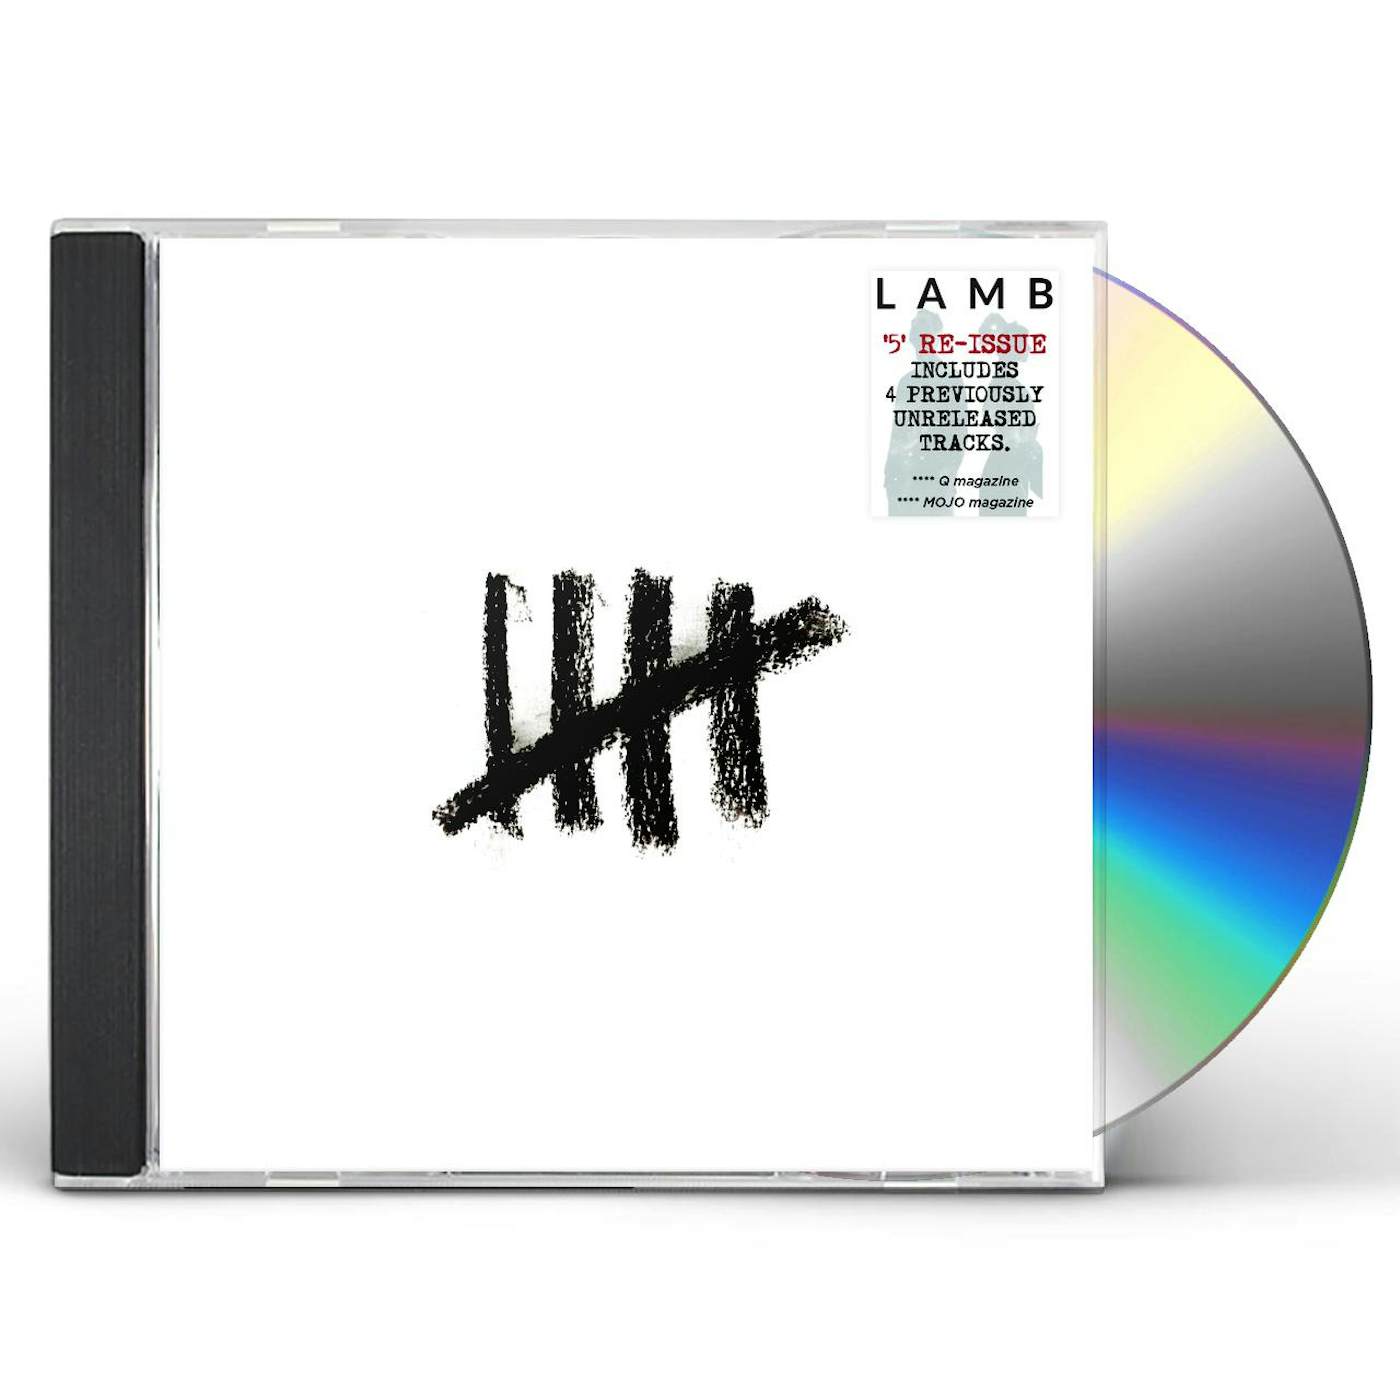 Lamb 5 CD